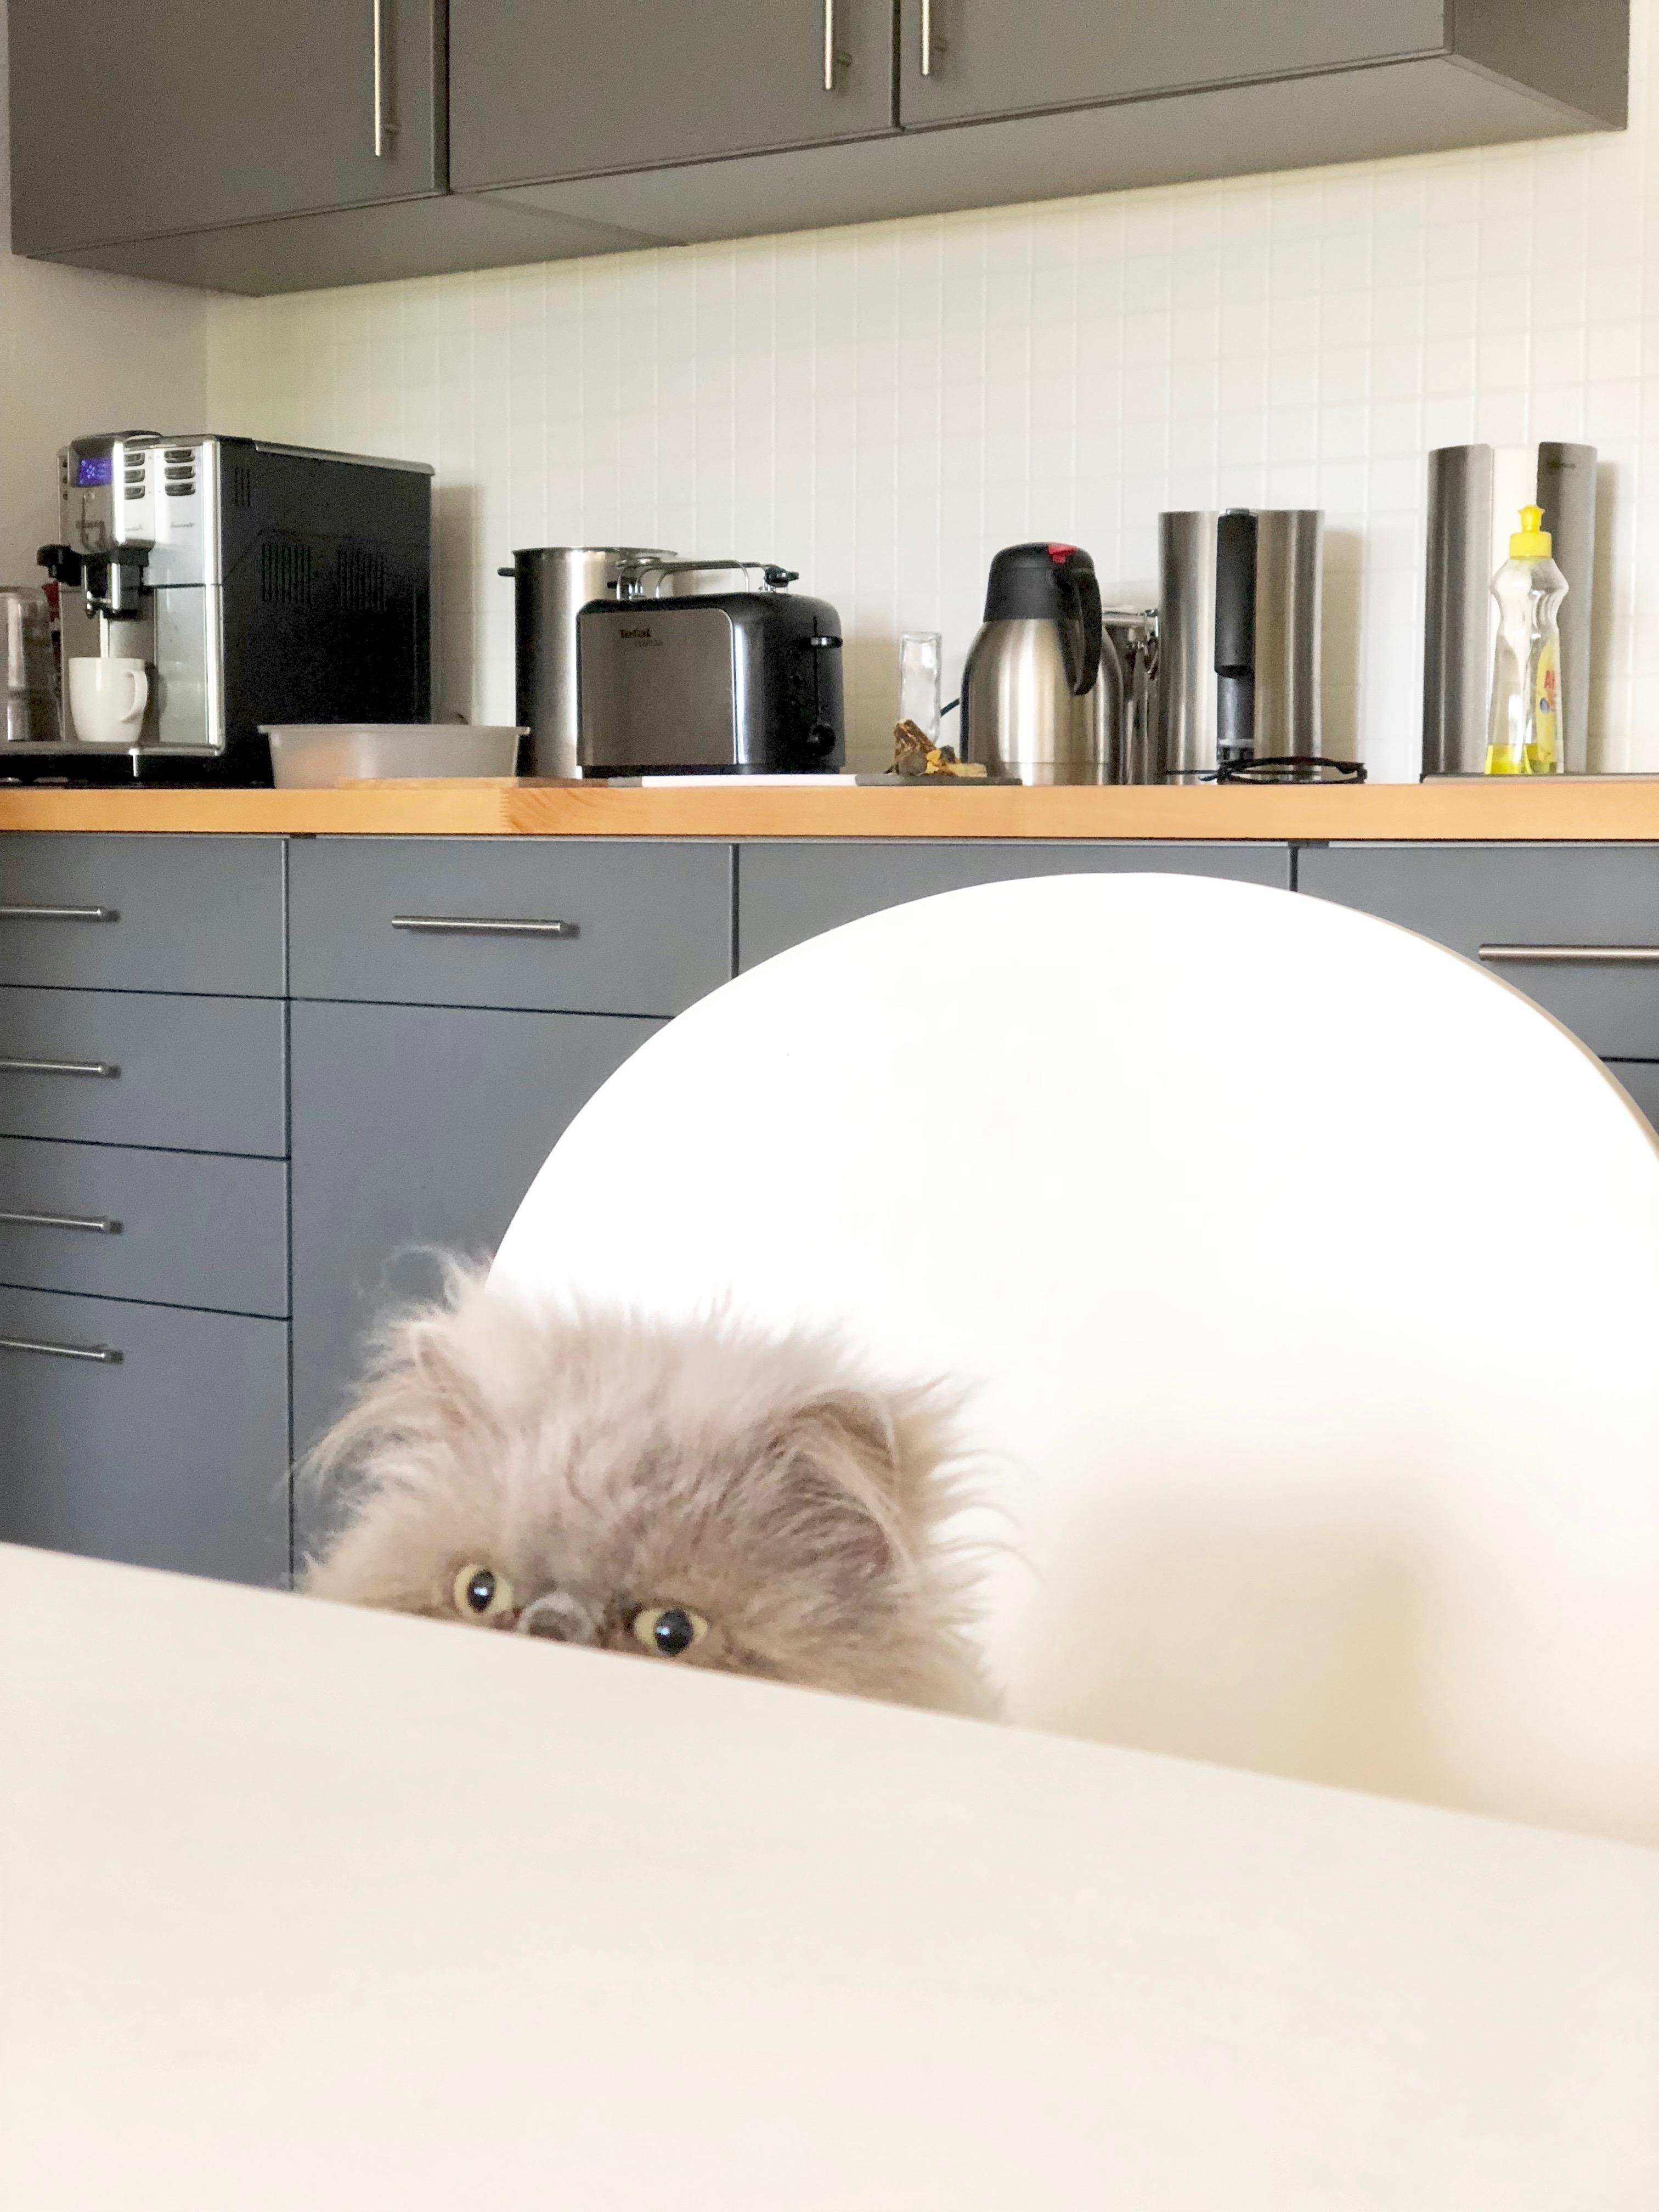 carlo ist watching us😻
#rescuedcat #perser #kitchen #fürmehrrealität #unaufgeräumt #egal #bestpic #grossegrumpyliebe